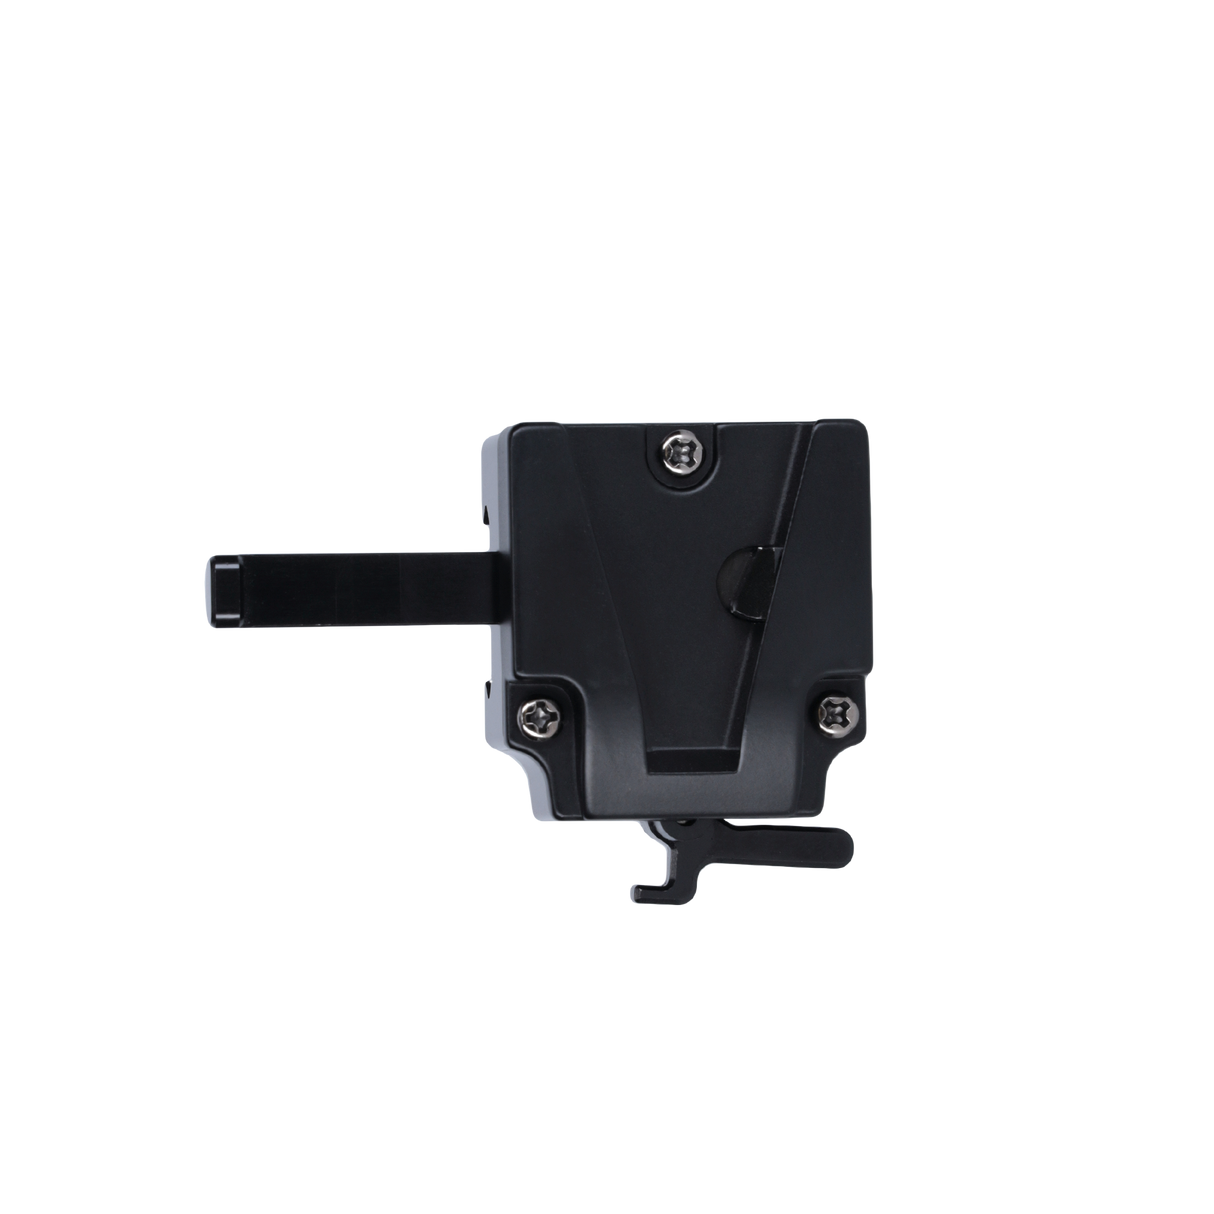 V-mount adapter for candela 120/220/330